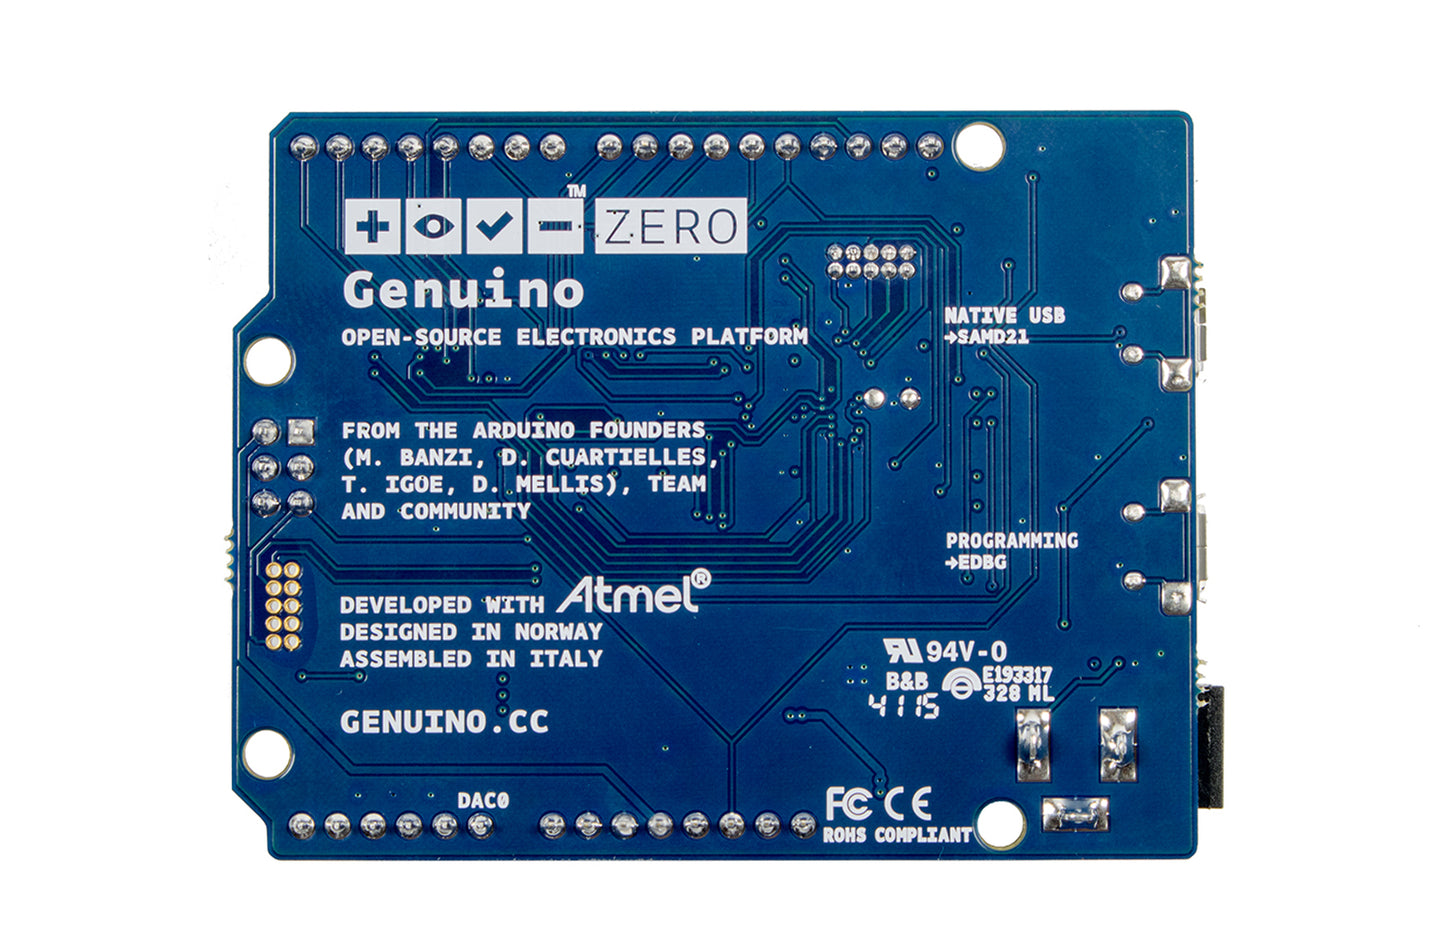 Genuino Zero Development Board, 32-Bit ARM Cortex M0+